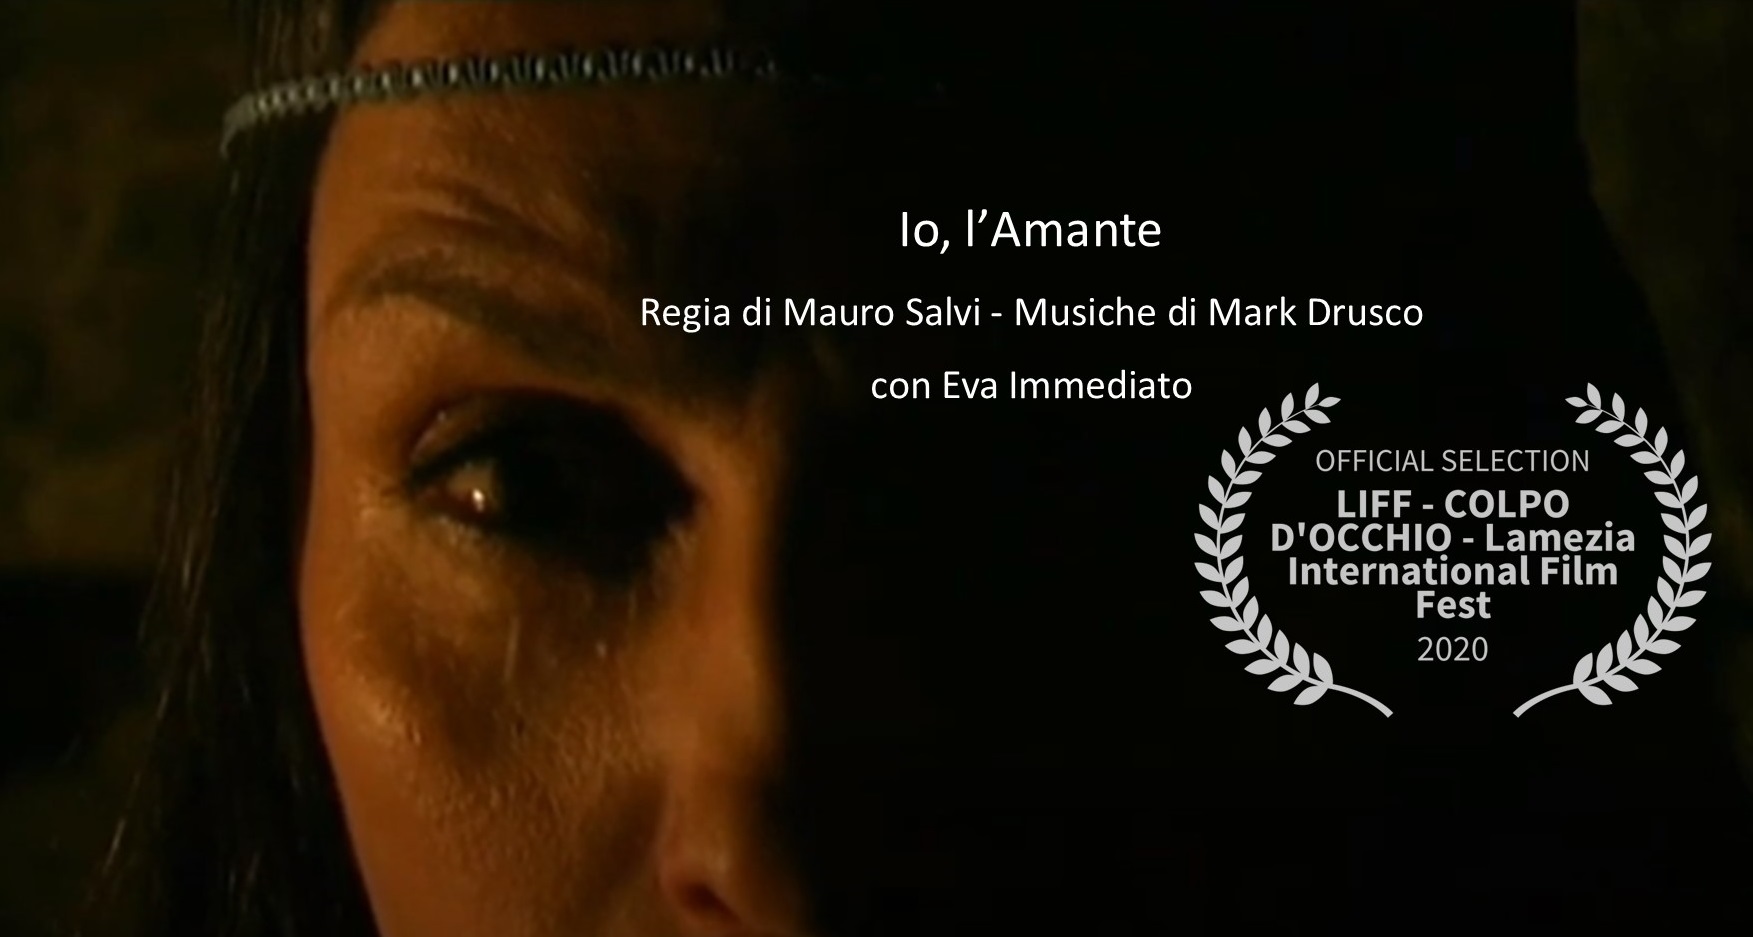 Io, l’Amante: il corto prodotto da Rupe Mutevole e tratto dal libro di Roberta Savelli, finalista al Lamezia International Film Festival 2020